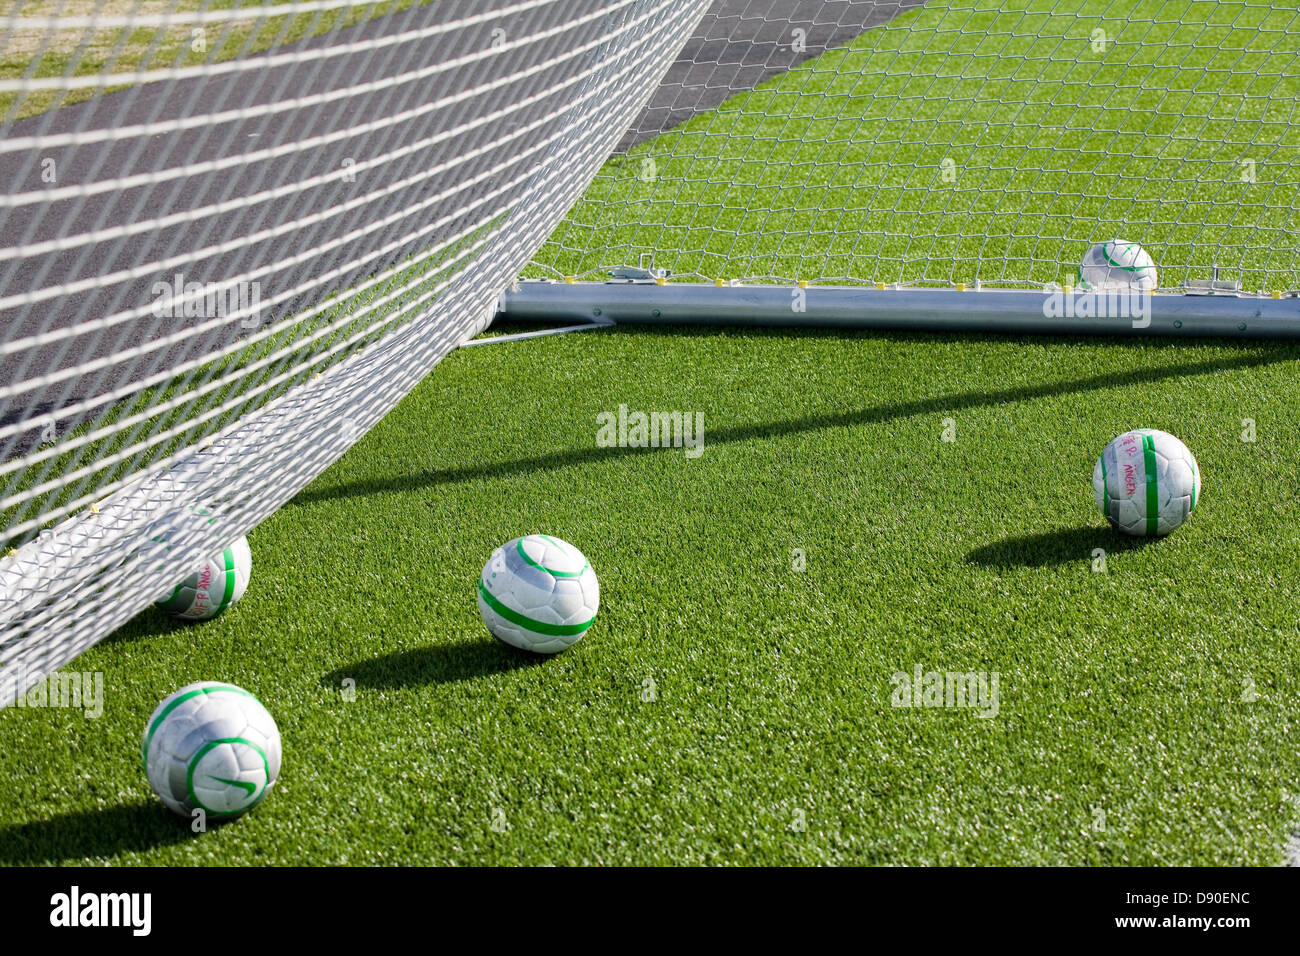 Un détail de buts de soccer d'un filet et de balles. Banque D'Images